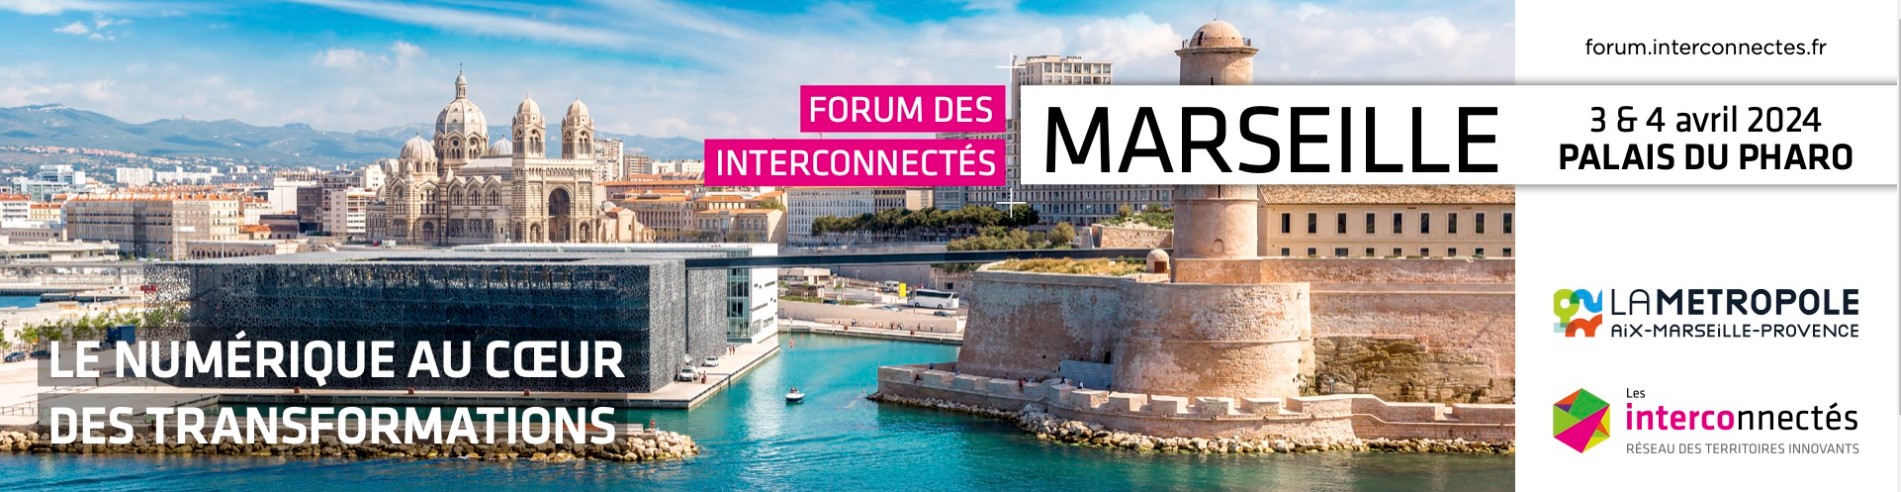 Evenement Partenaire : Forum des Interconnectés à Marseille le 3 et 4 avril